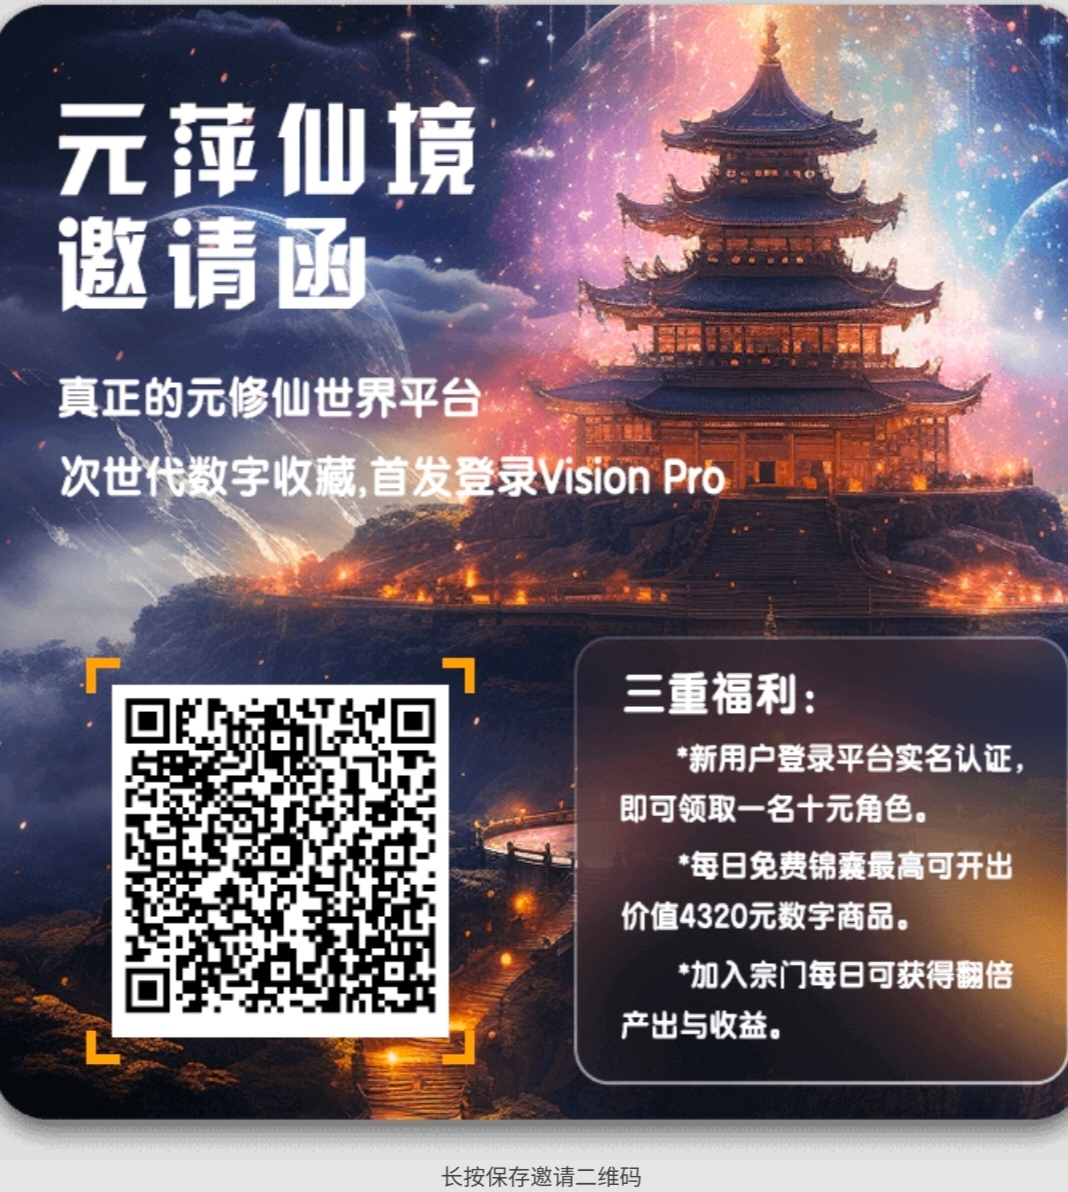 米萍仙境 潜力新游大仙域 - 315首码项目网-315首码项目网